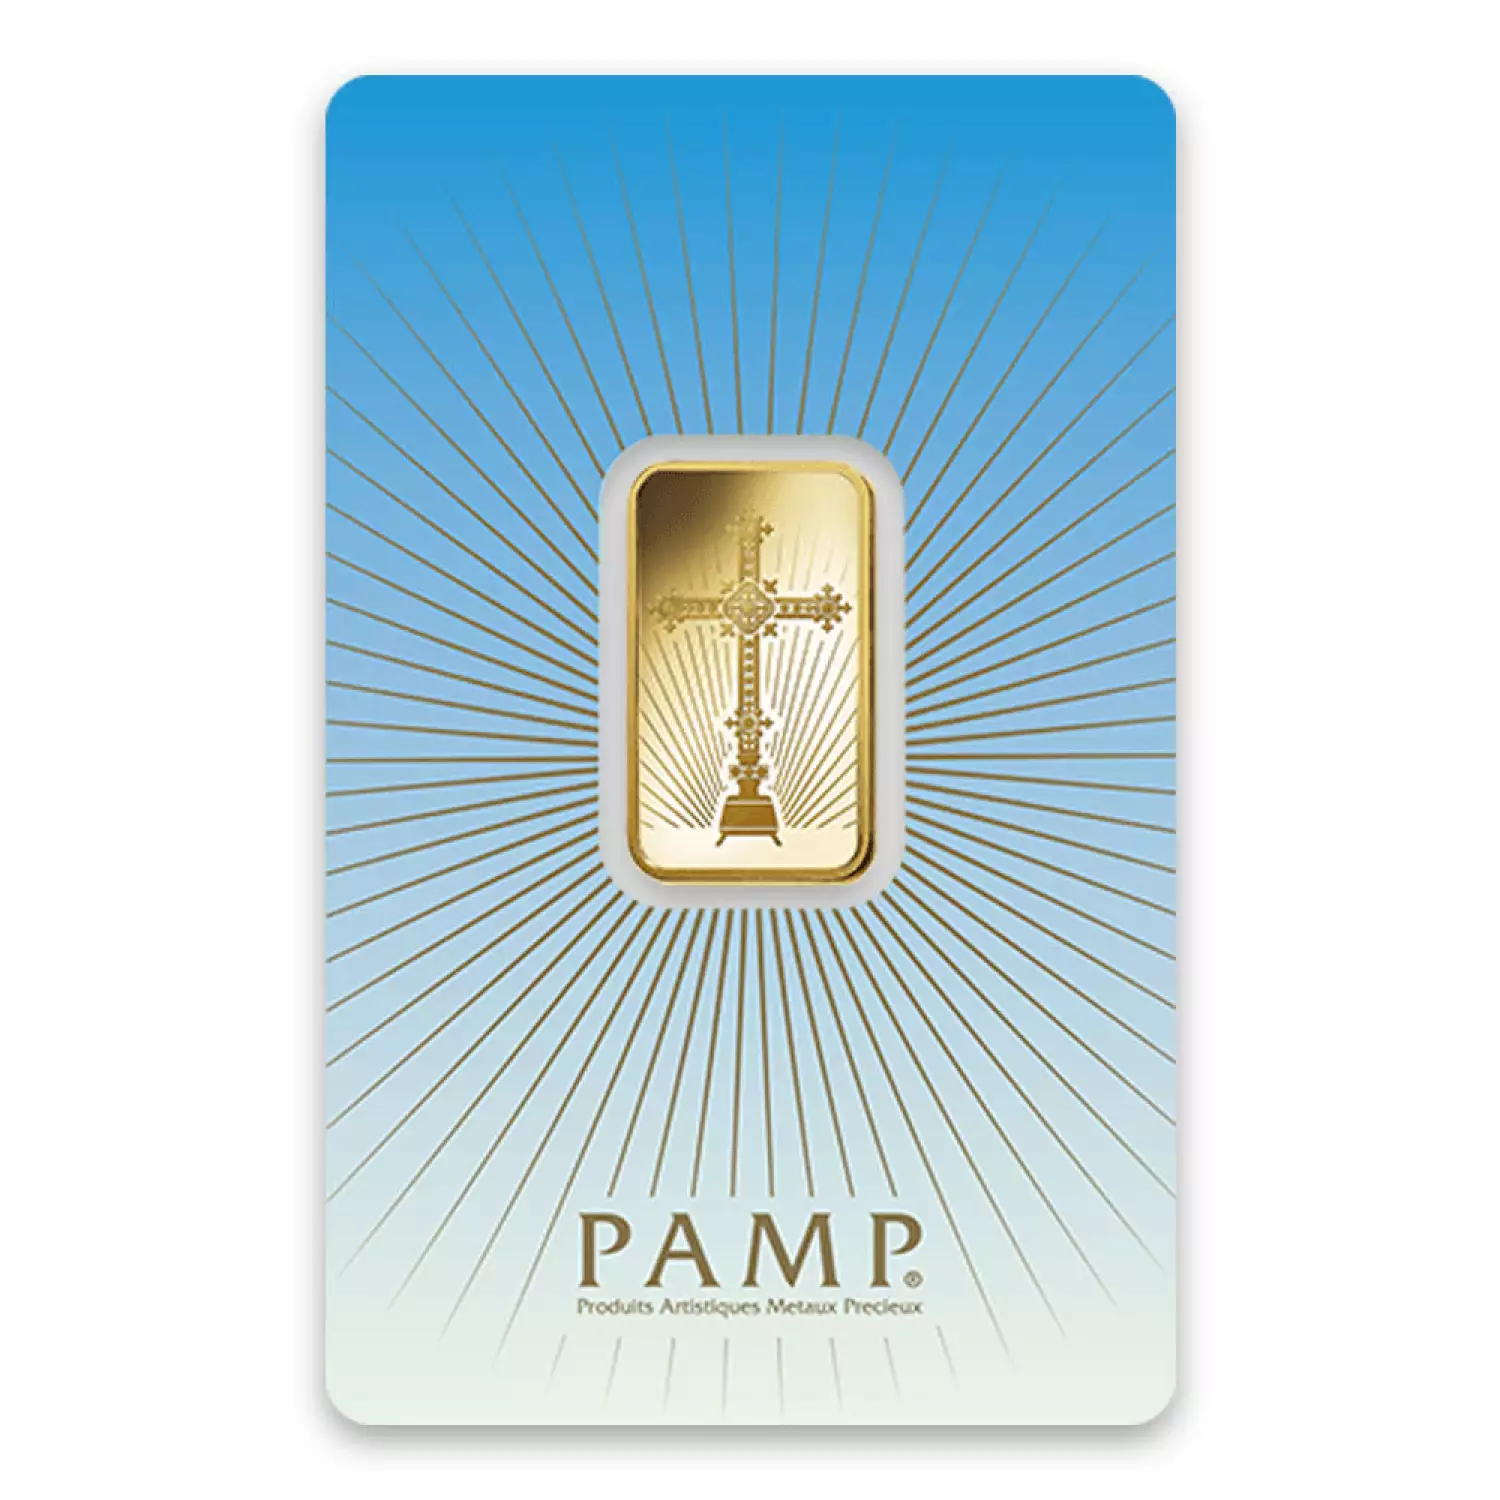 10g PAMP Gold Bar - Romanesque Cross (3)